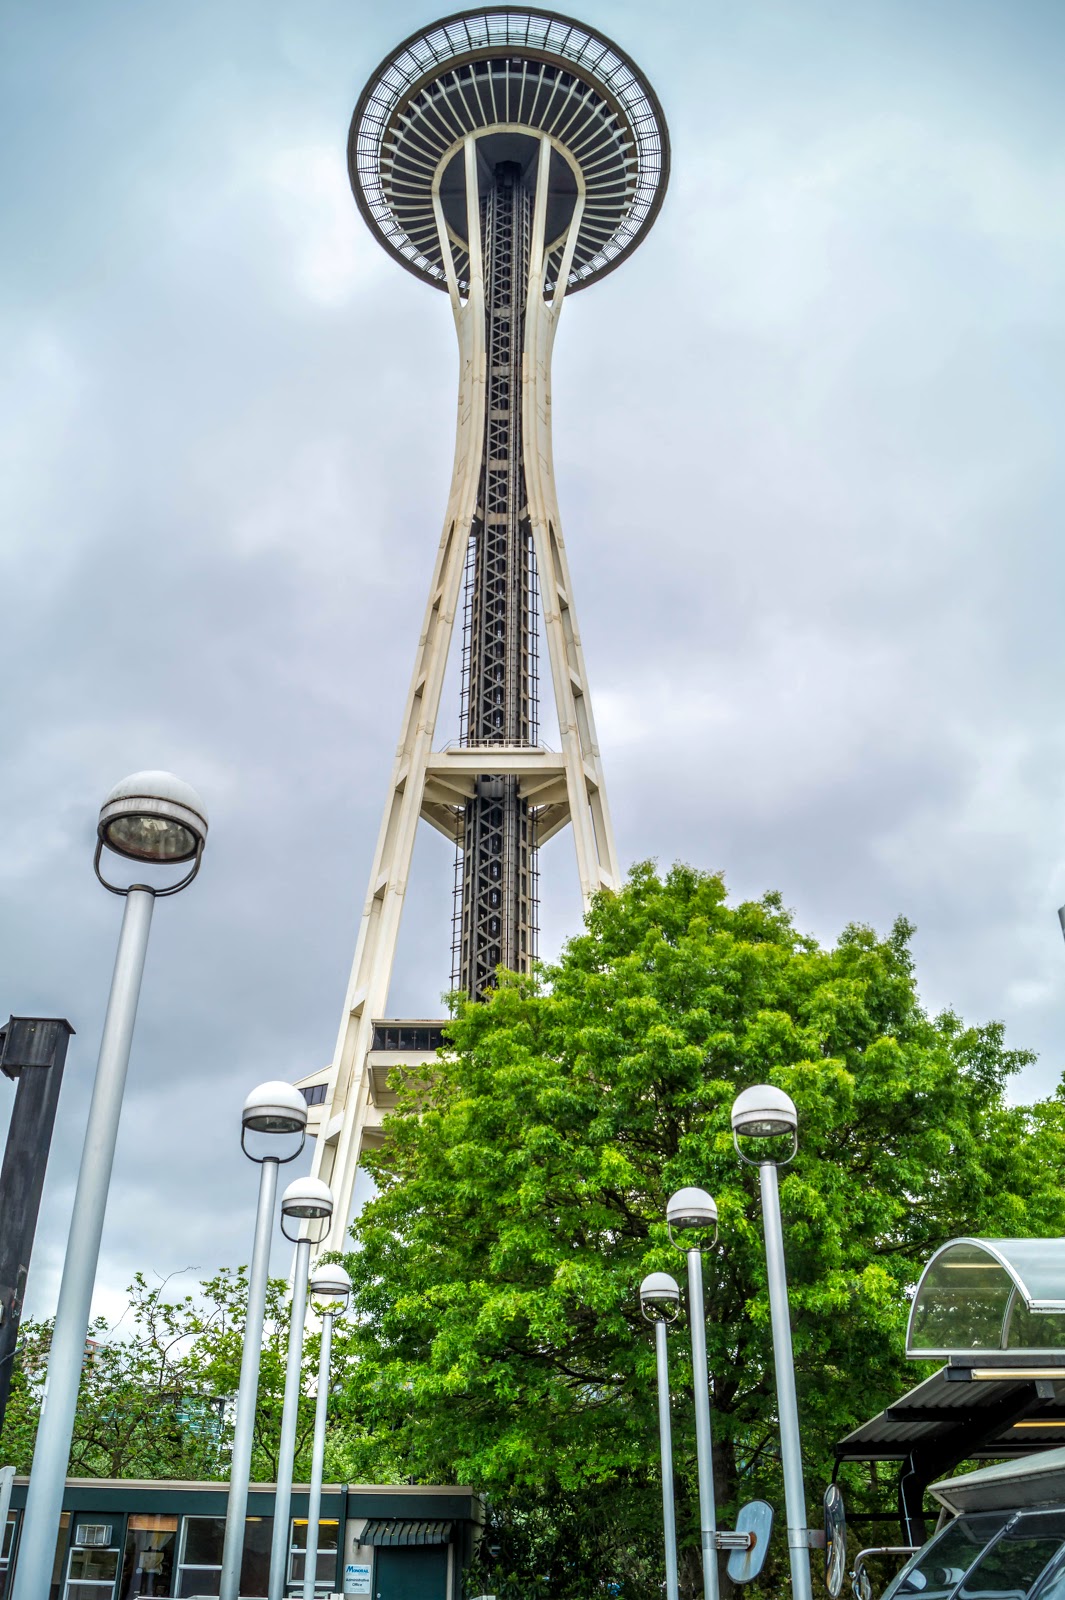 башня Space Needle. Башня является символом города и знаменита своей обзорной площадкой на высоте 160 метров